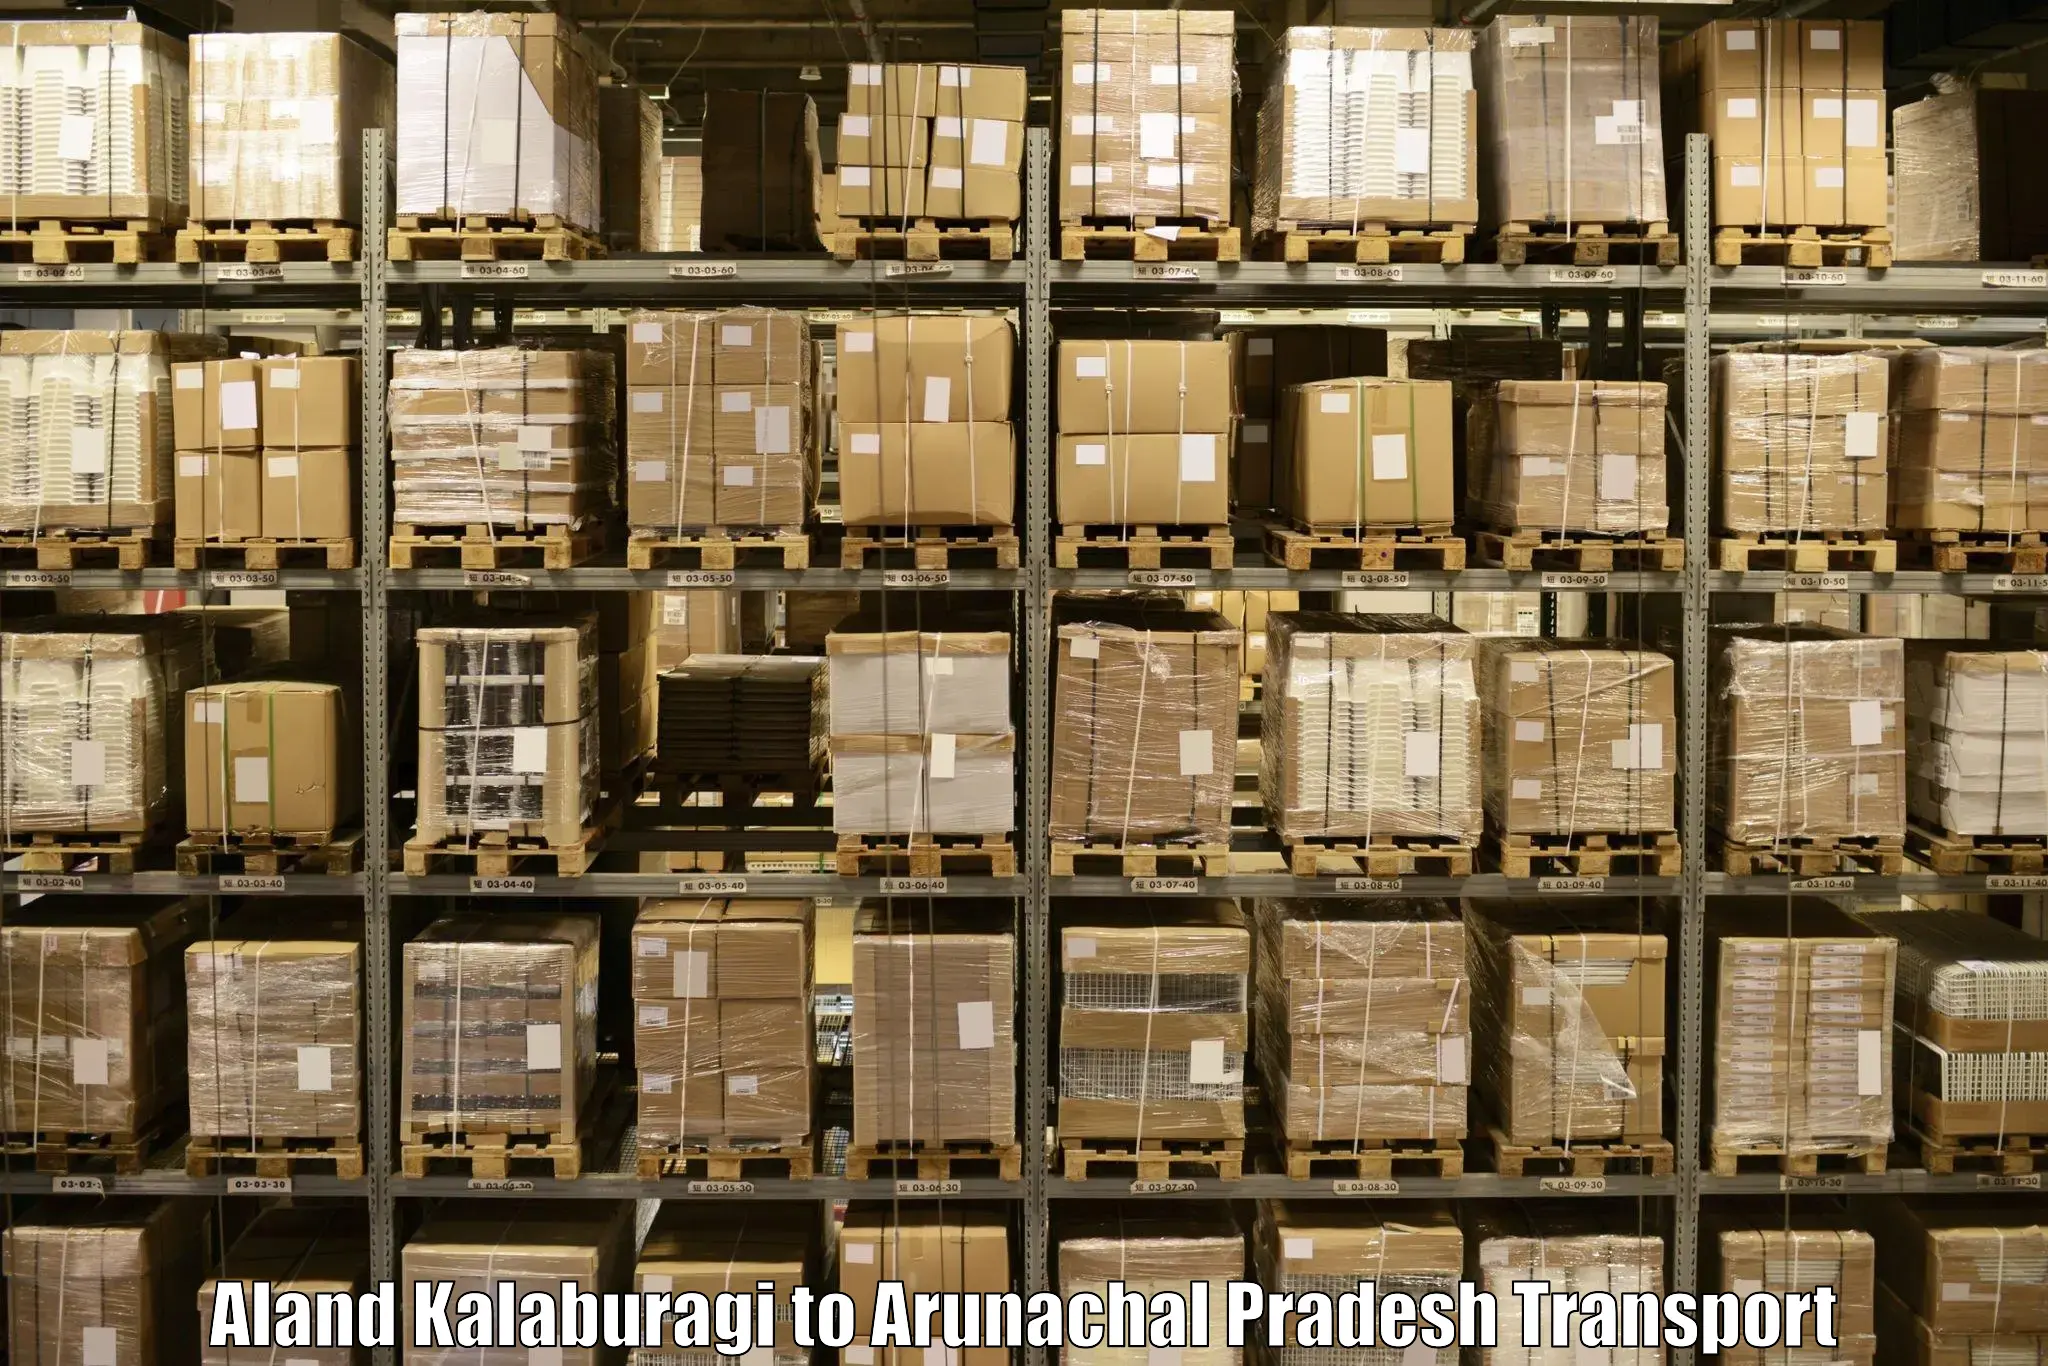 Shipping services Aland Kalaburagi to Pasighat